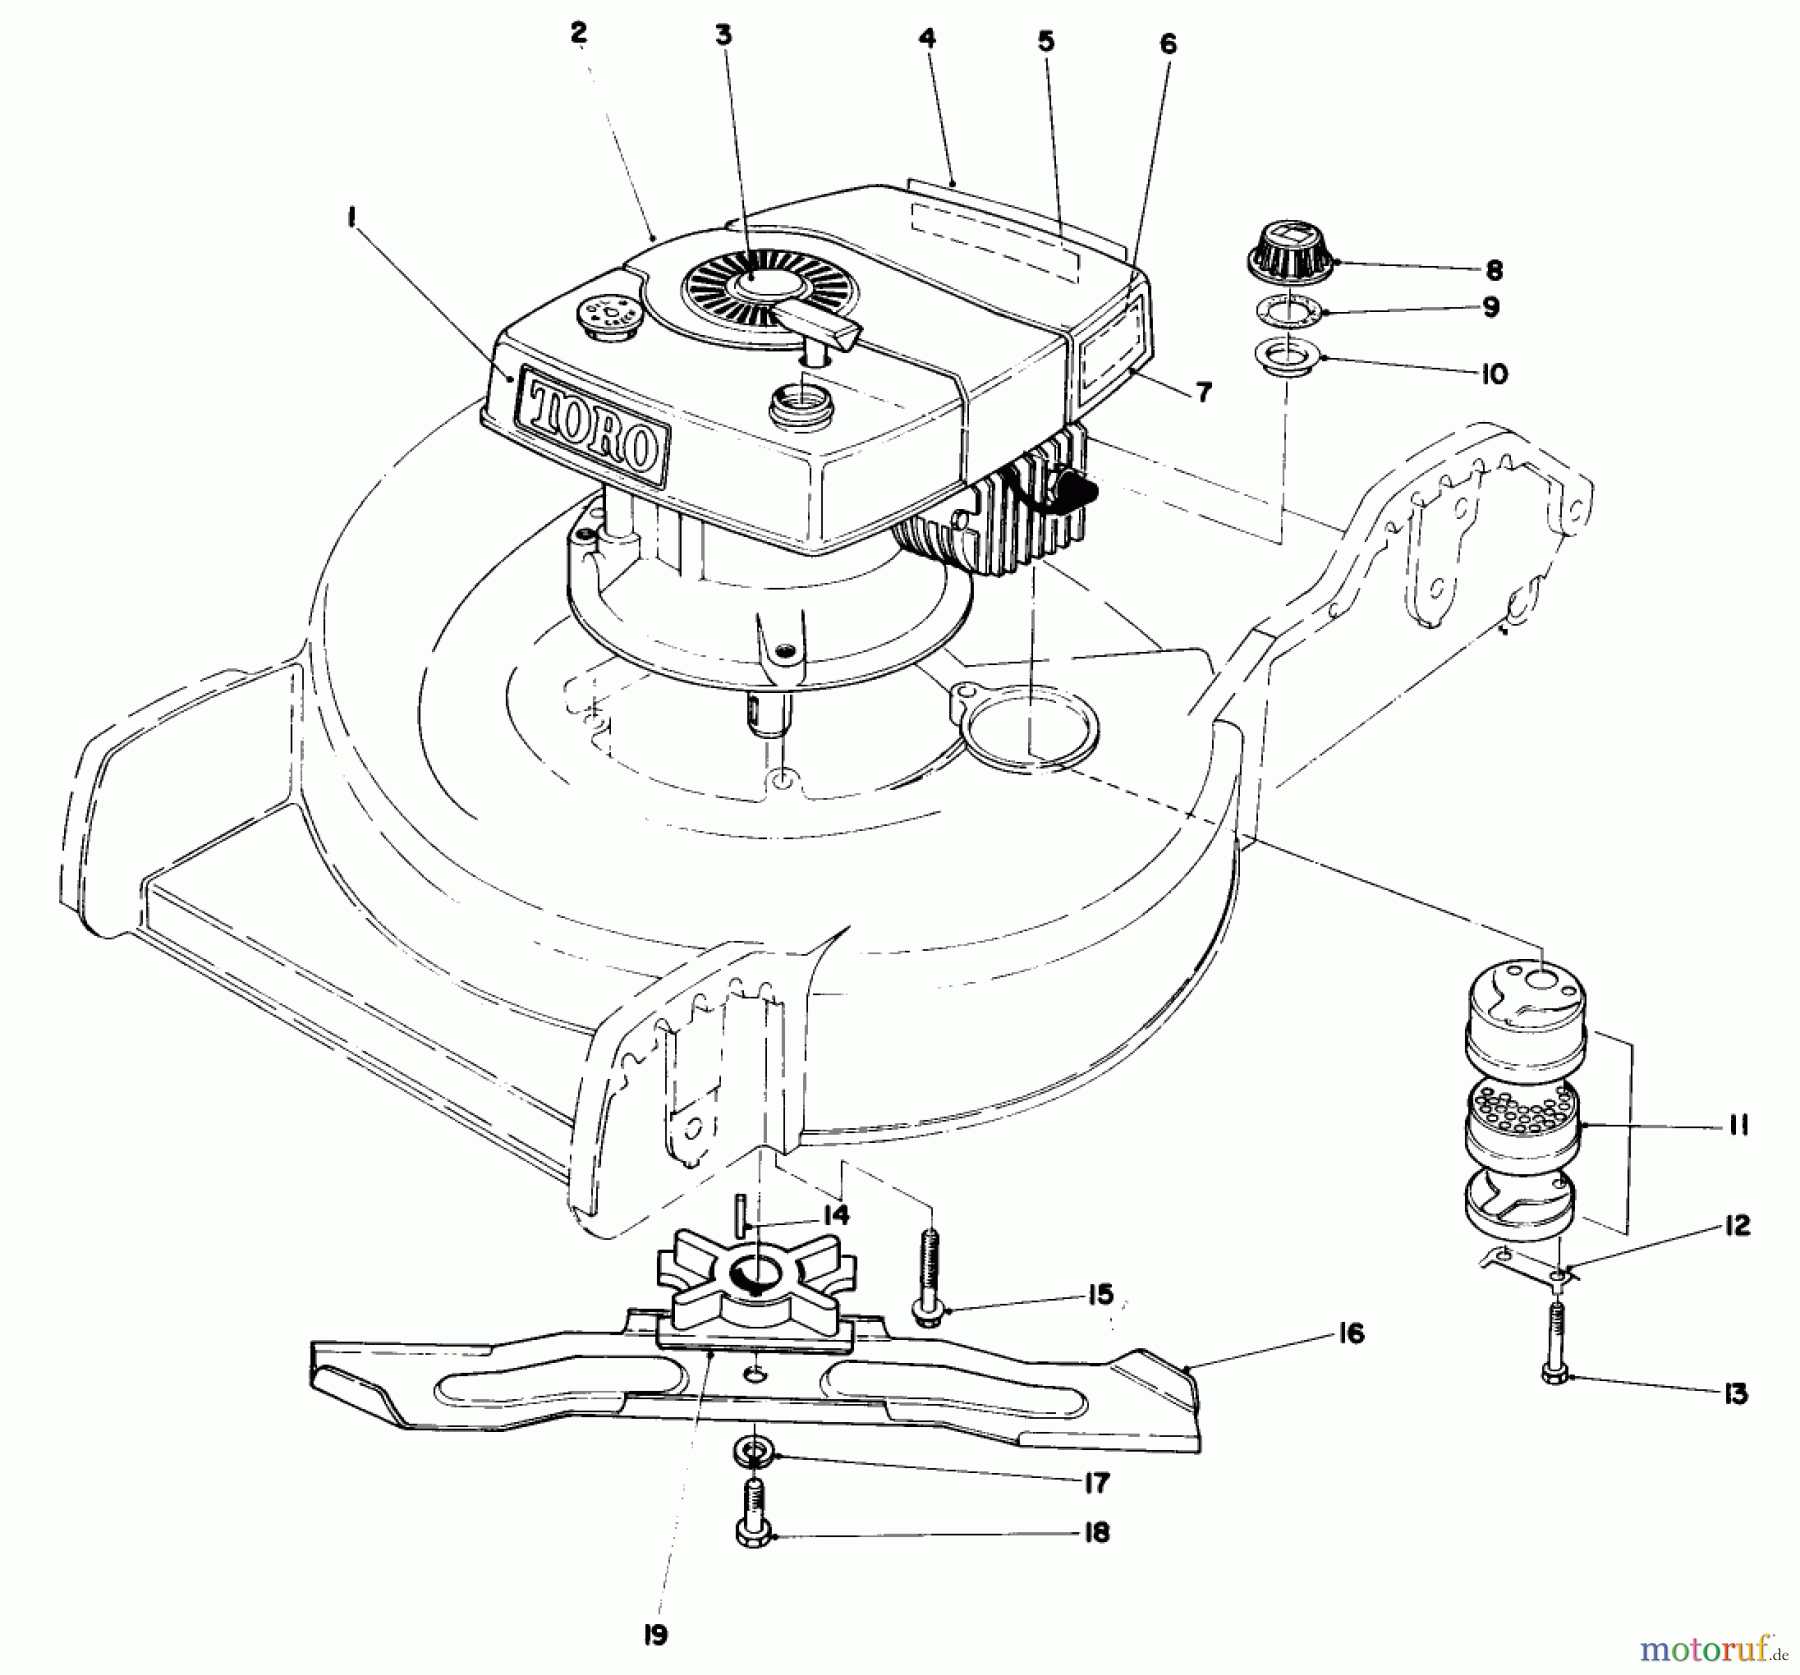  Toro Neu Mowers, Walk-Behind Seite 1 20758 - Toro Lawnmower, 1983 (3000001-3999999) ENGINE ASSEMBLY